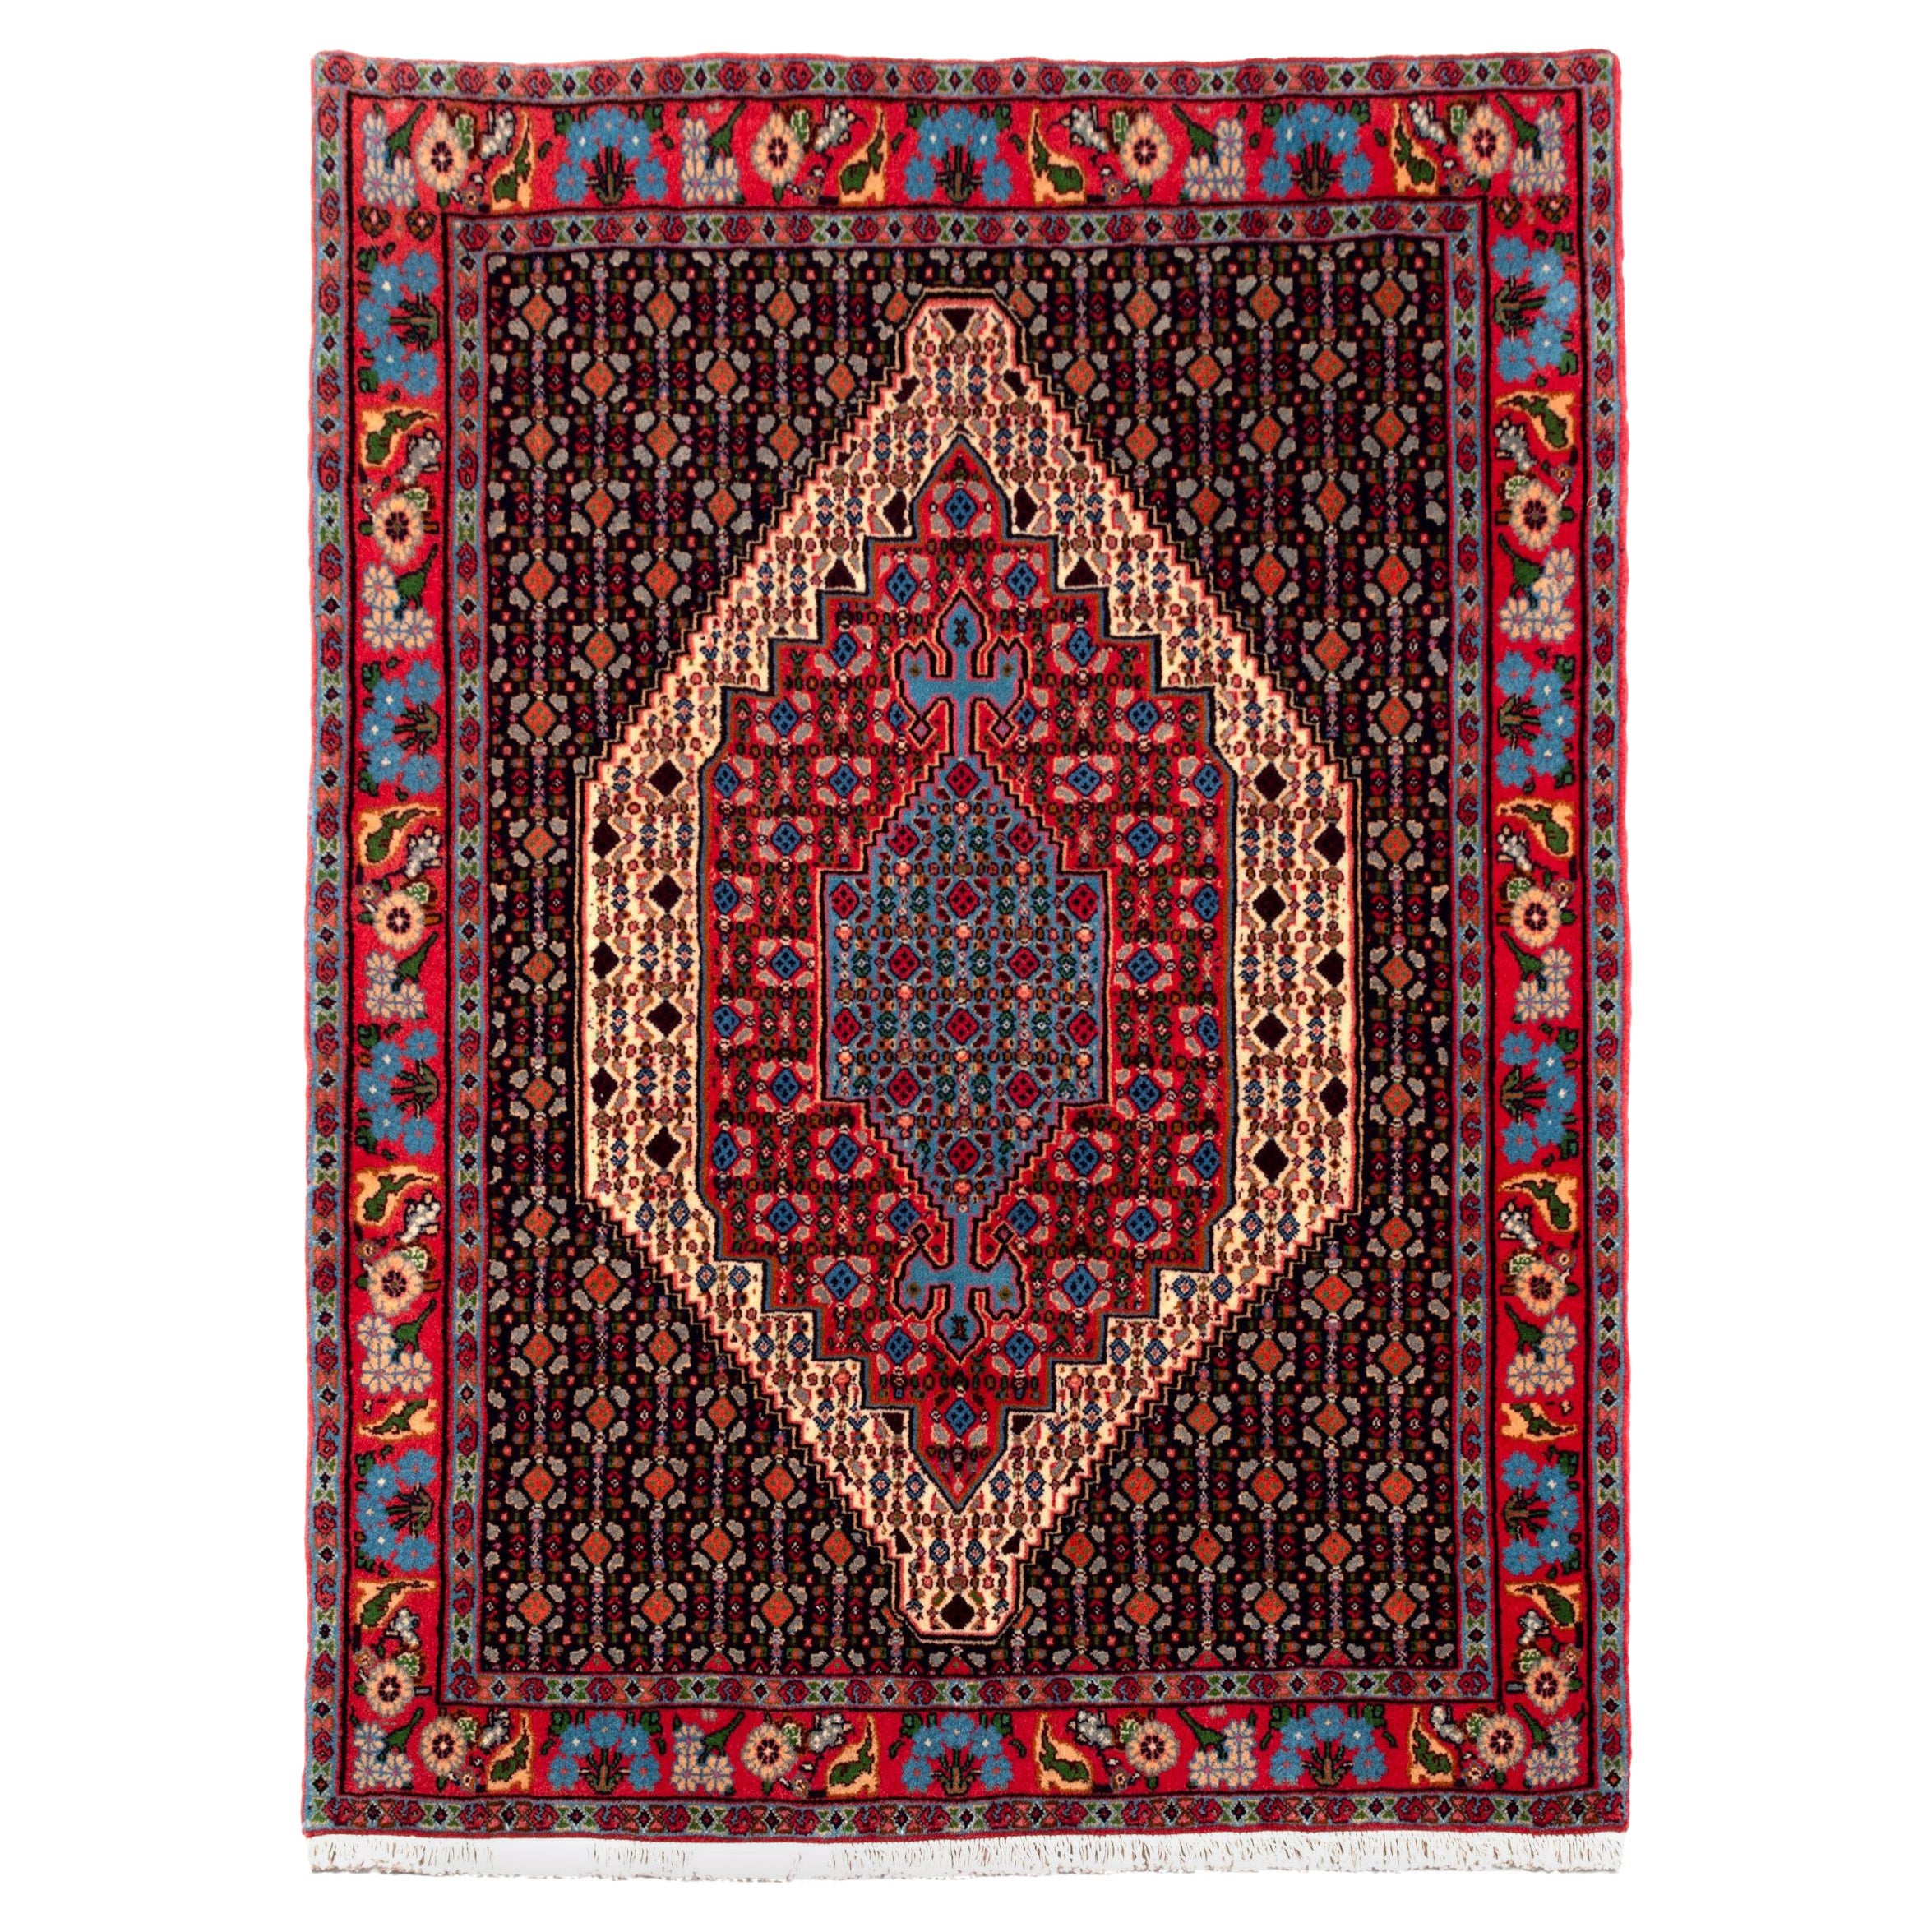 Zentrales Medaillon des persischen Senneh-Teppichs